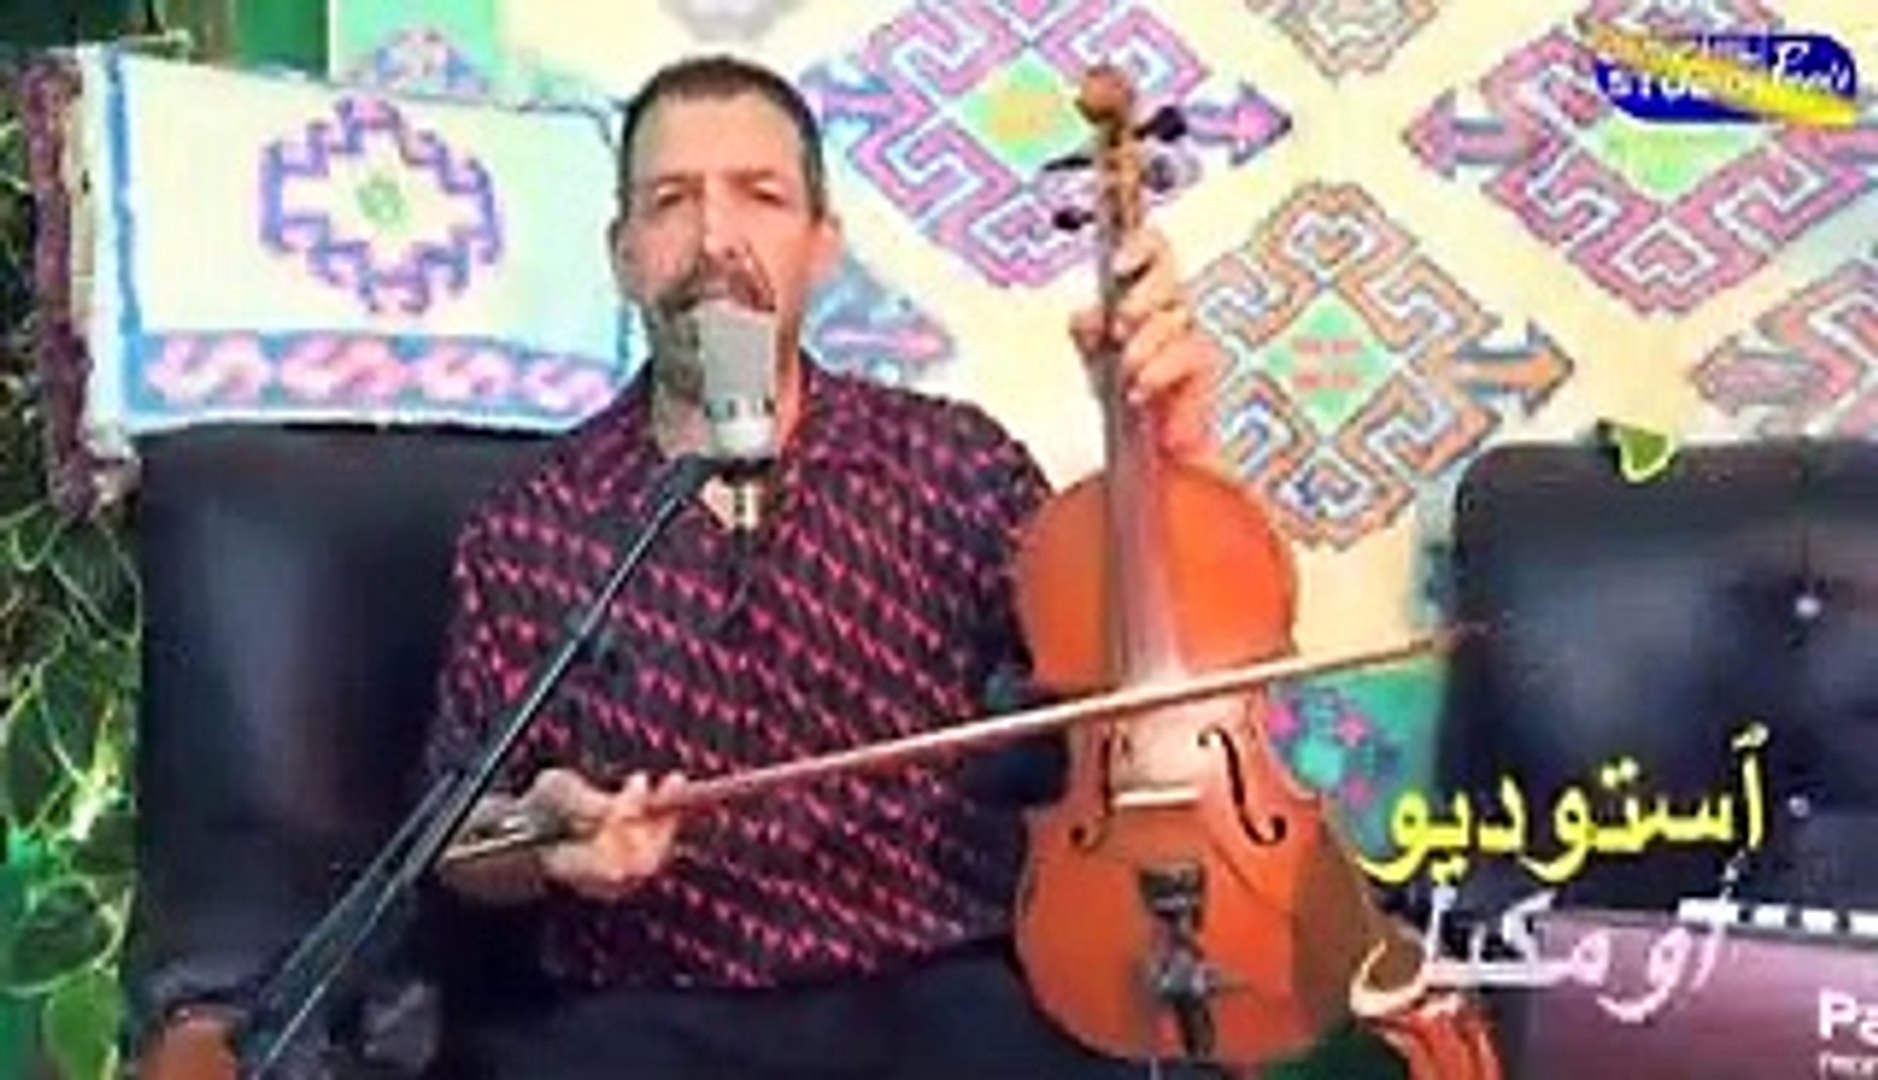 مصطفى اومكيل في اغانيه الامازيغية الشعبيةالمتميزة mustapha oumkil - فيديو  Dailymotion